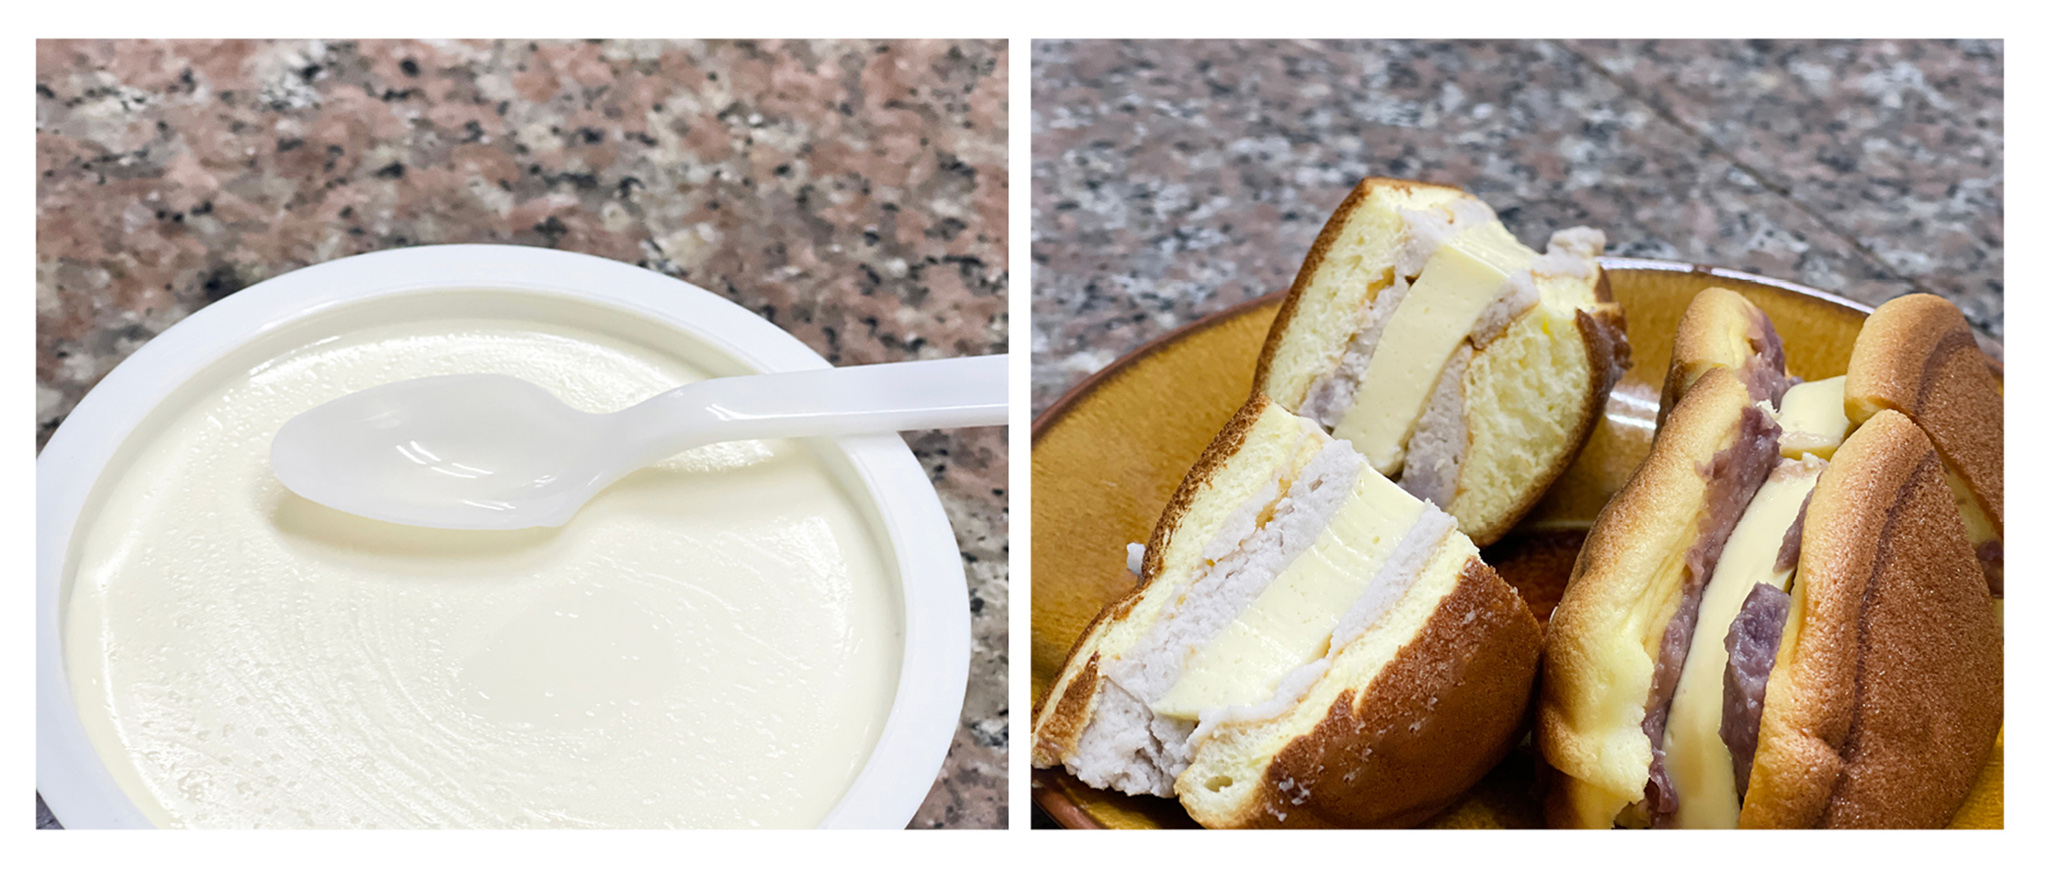 不添加一滴水的元老級鮮奶酪（左圖）。布丁最愛的獨門三層布蕾燒（右圖）。